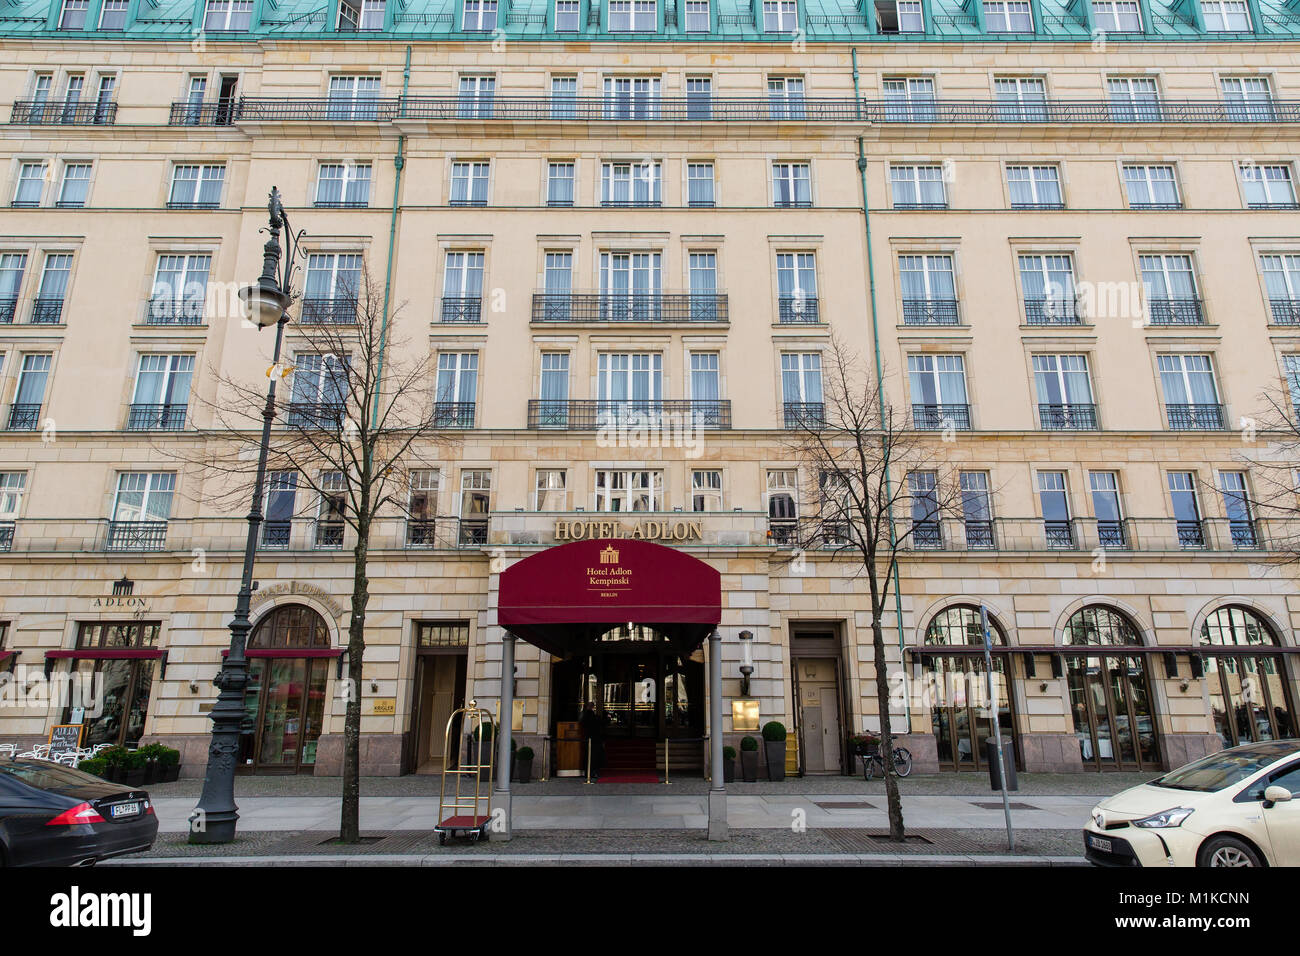 Entrée principale de l'hôtel Adlon Kempinski, Berlin, Allemagne Banque D'Images